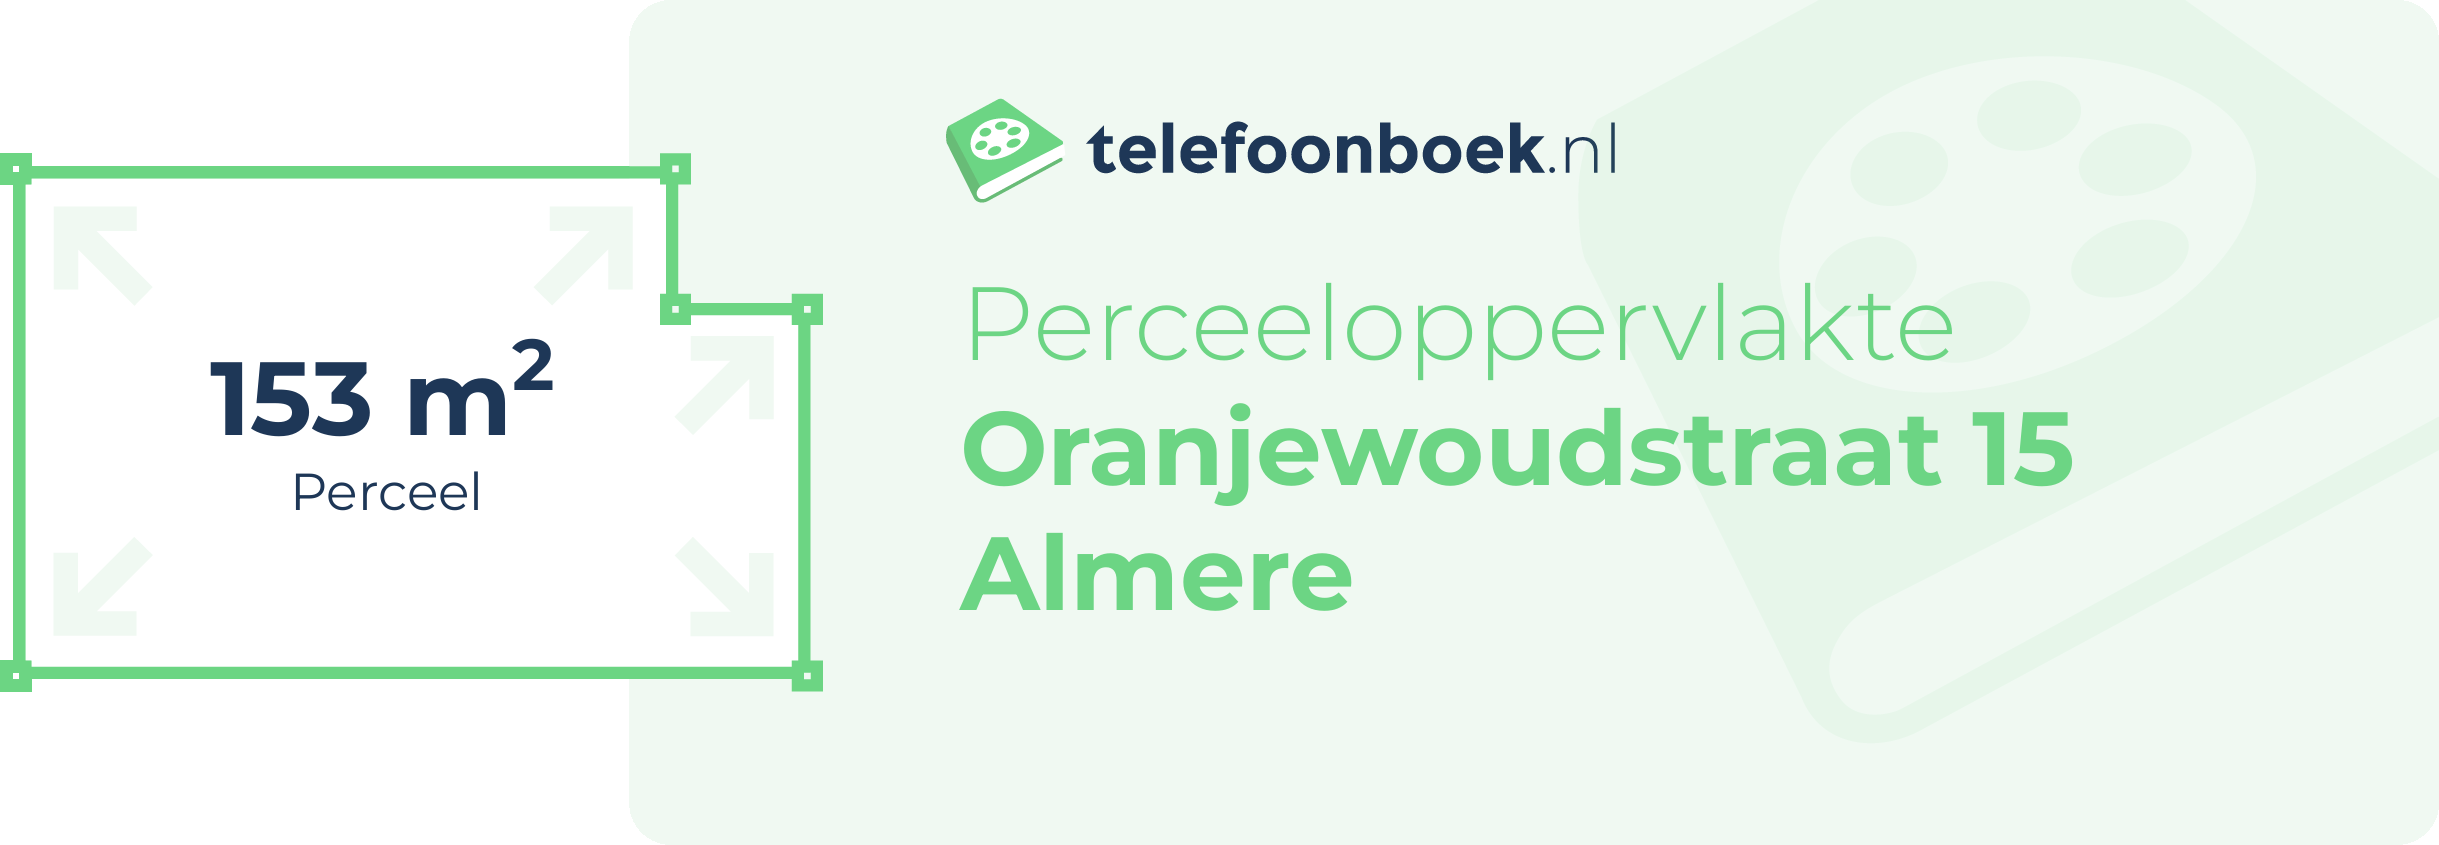 Perceeloppervlakte Oranjewoudstraat 15 Almere